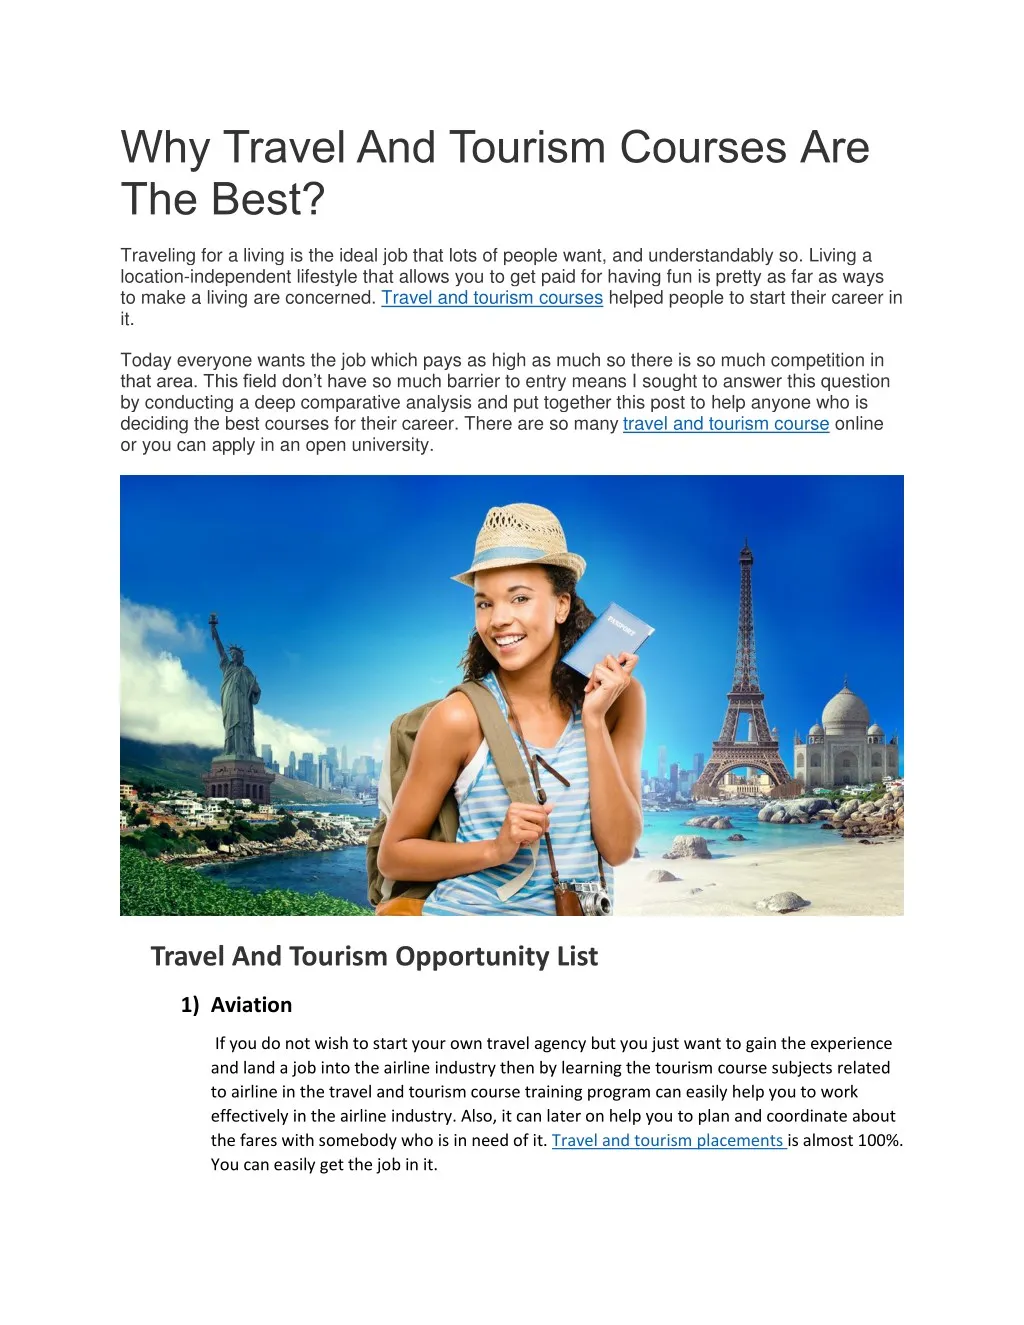 tourism best course